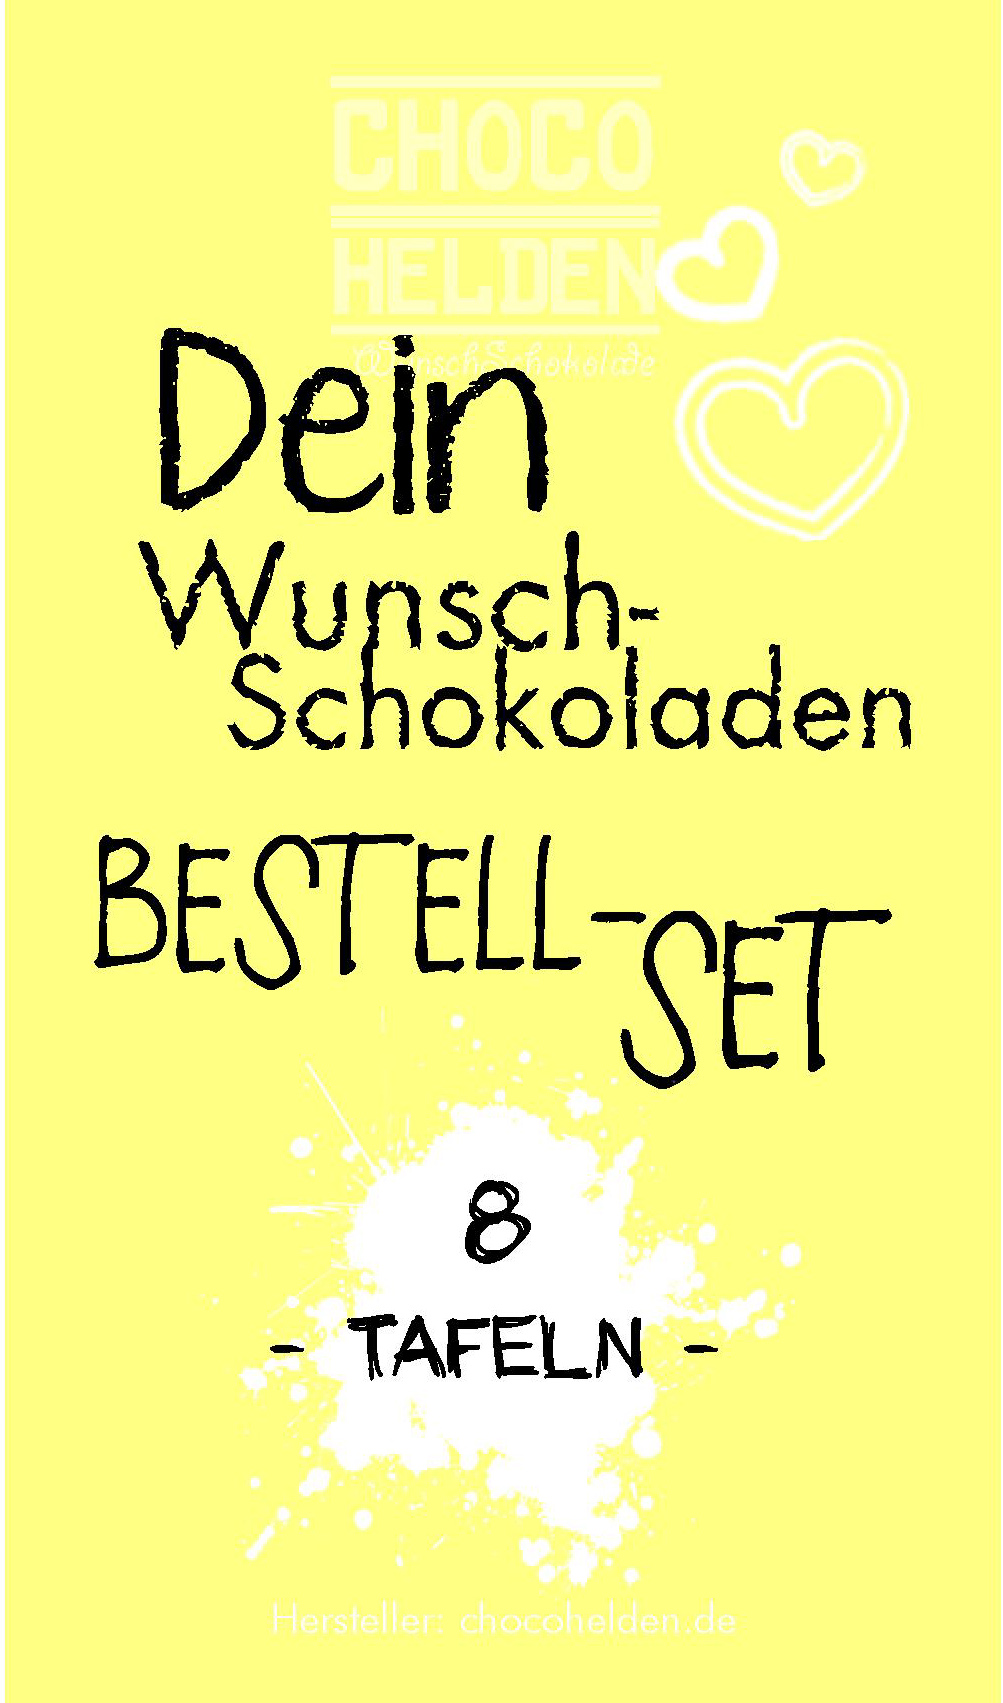 WunschSchokoladen Bestell-Set 8 Tafeln